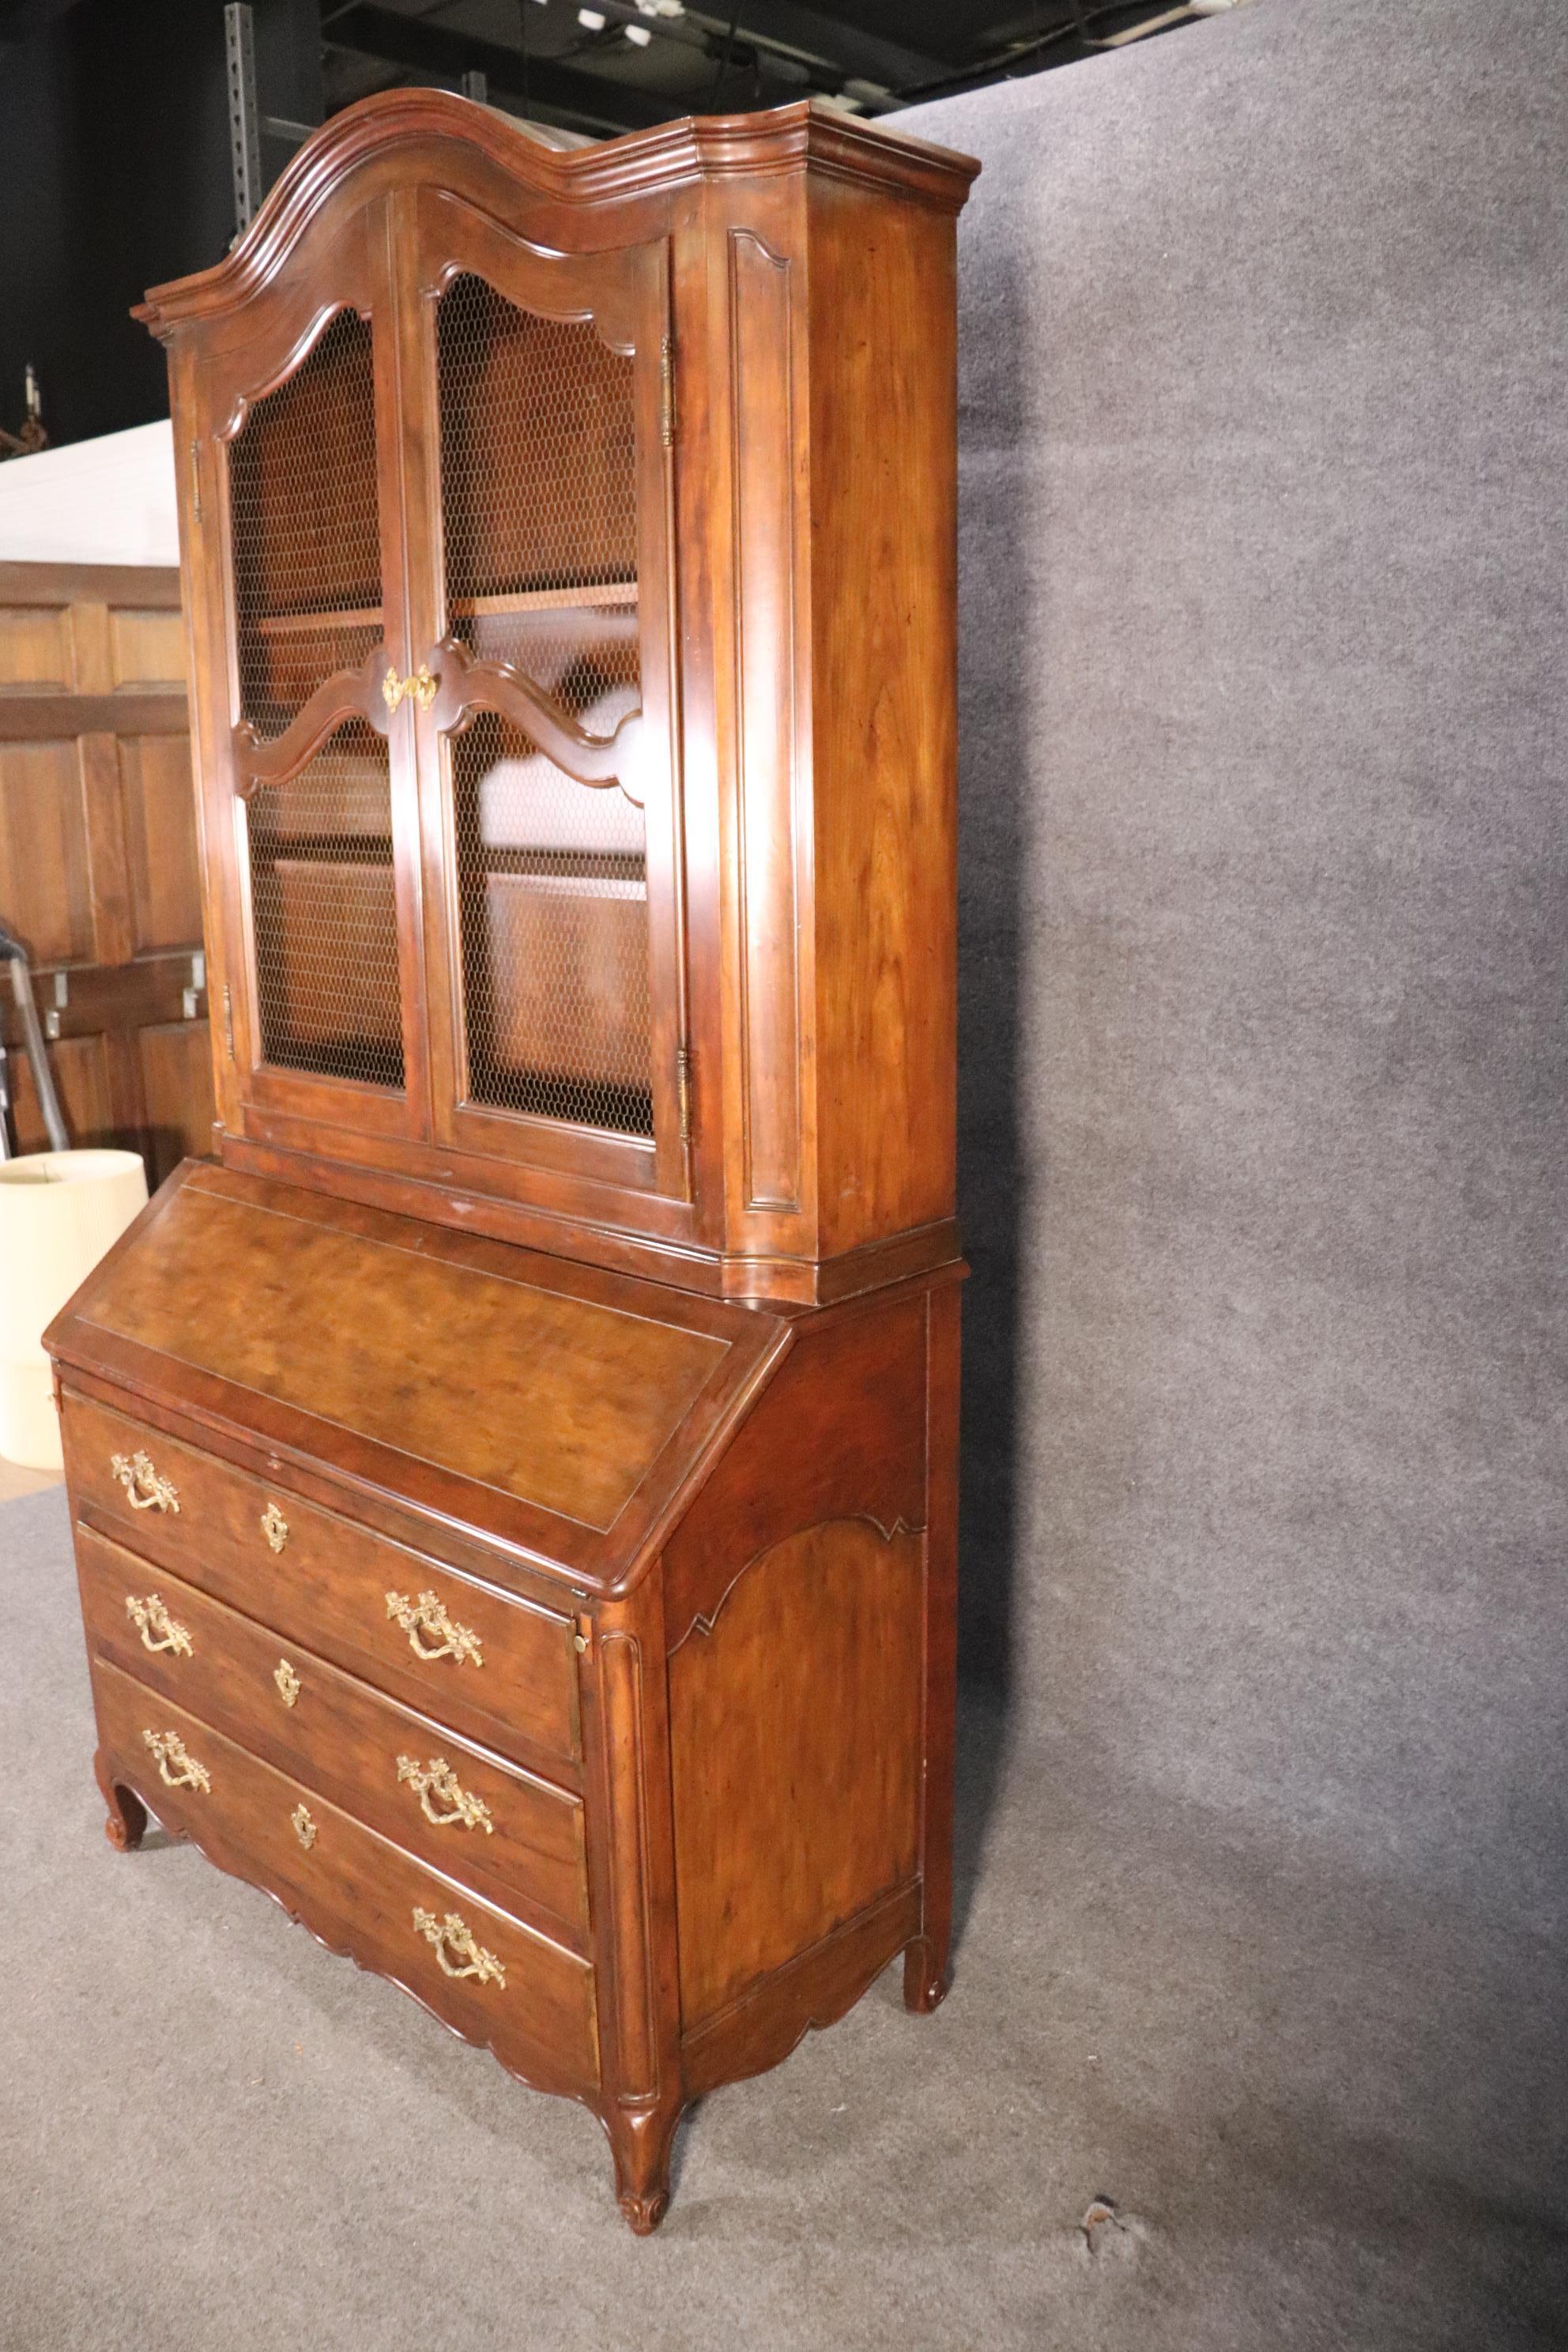 Dies ist ein seltener Artikel von Baker Möbel. Es handelt sich um einen französischen Sekretär im Louis-XV-Stil aus Nussbaum mit einem Netzgitter für die Türen. Der Schreibtisch ist 89 hoch x 47 breit x 21 tief. Der Schreibtisch ist in gutem